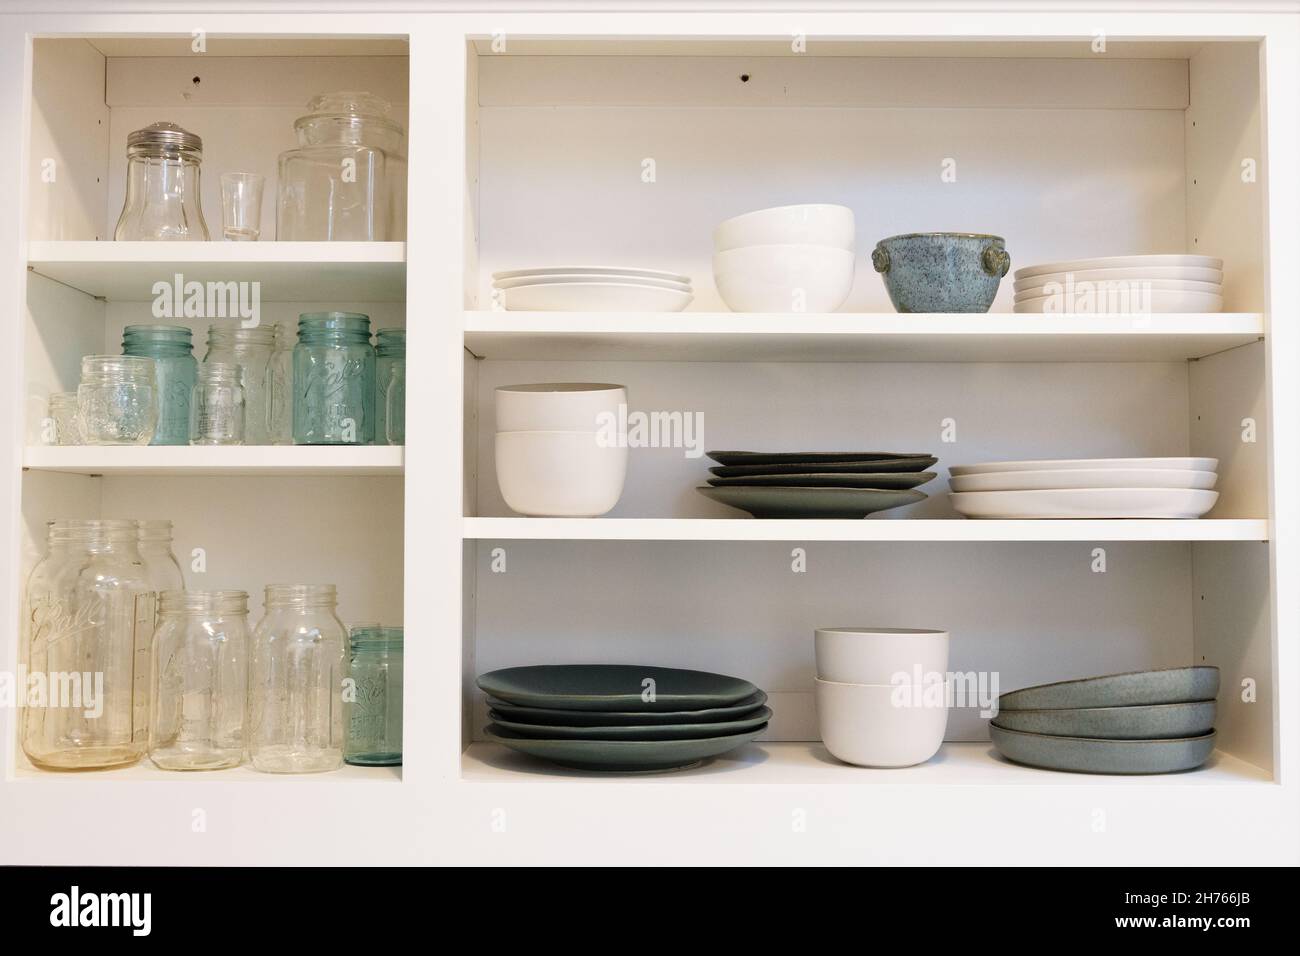 Armadi da cucina con un concetto aperto (senza porte) che contengono vasi e piatti in muratura chiari, bianchi e color acqua. Foto Stock